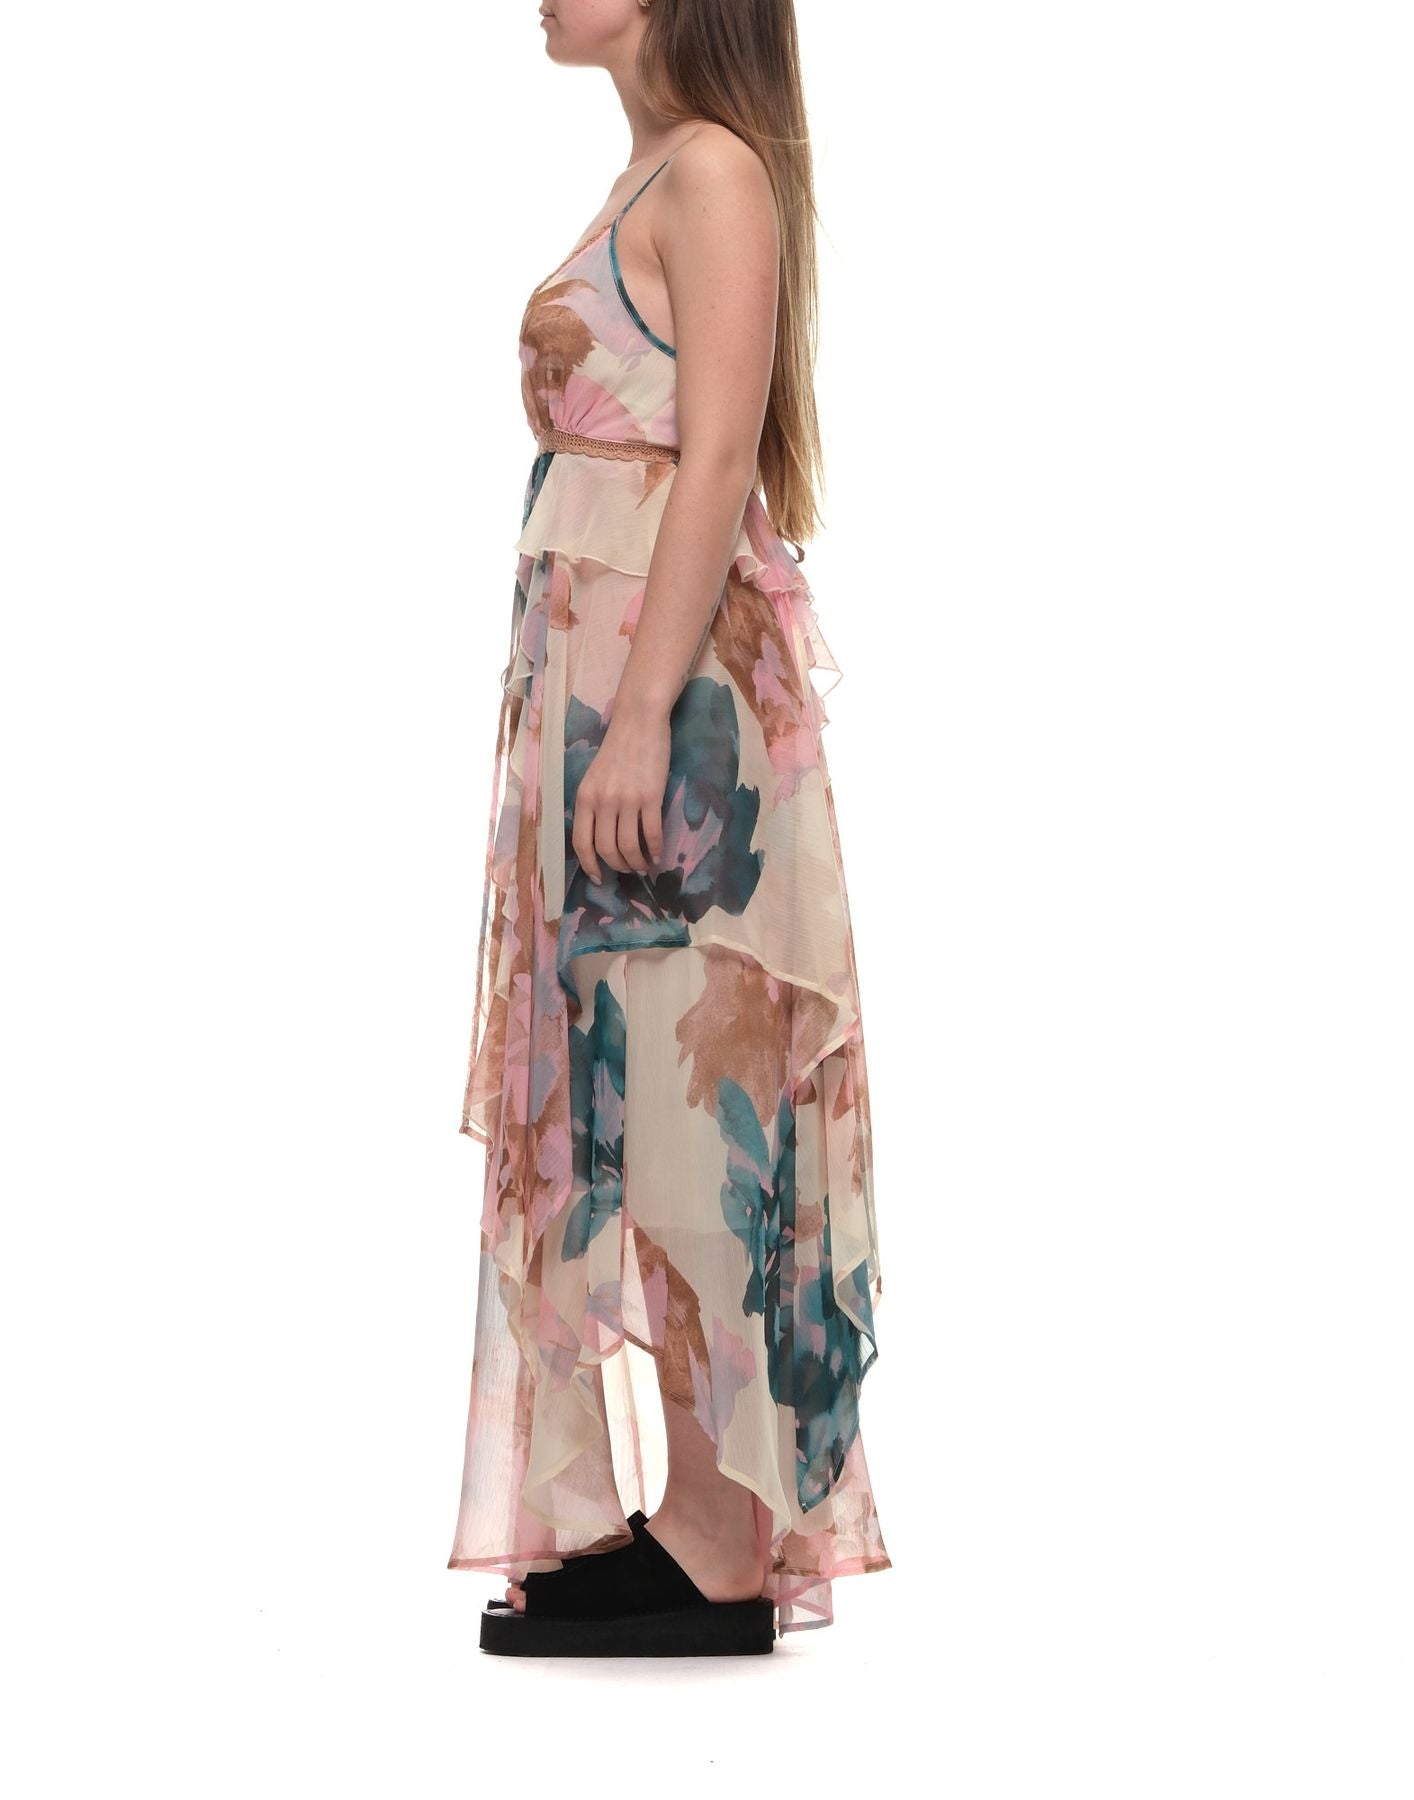 Kleid für Frau VSKD05139 Variante 1  Akep